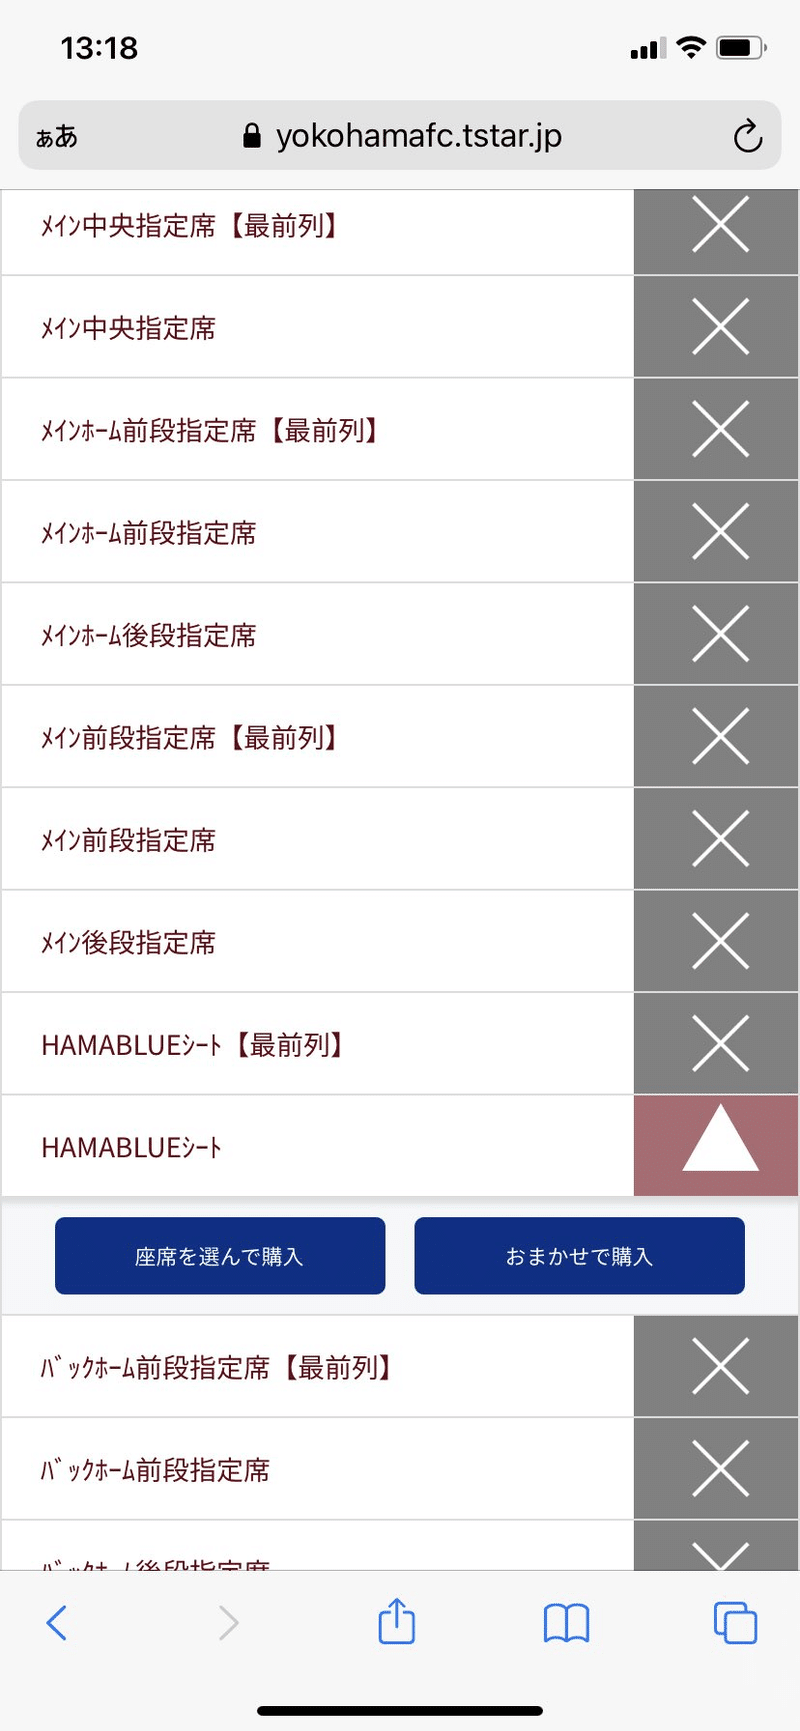 横浜fcチケットでのチケット購入について 横浜fc Official Note